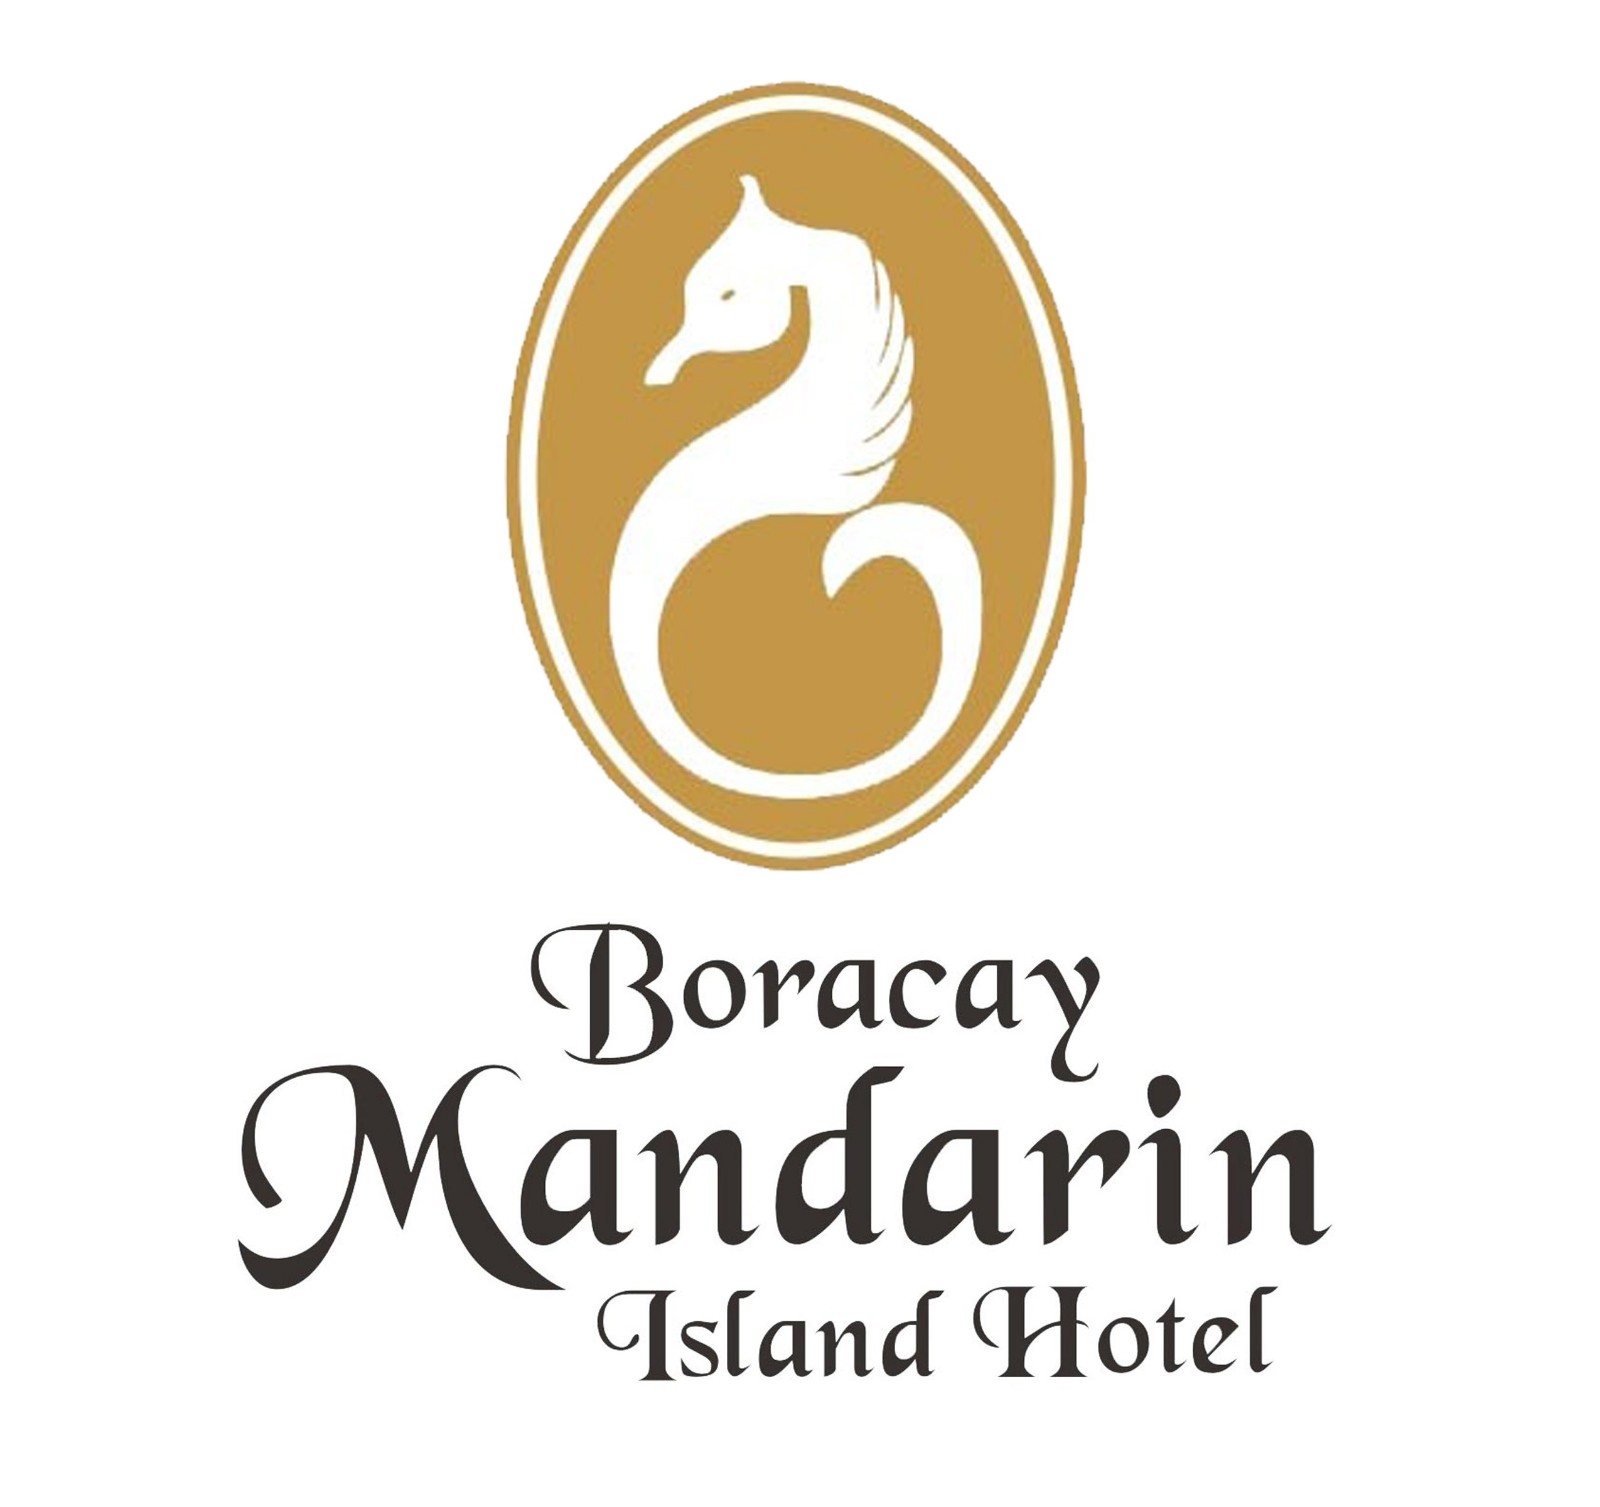 Boracay Mandarin Resort